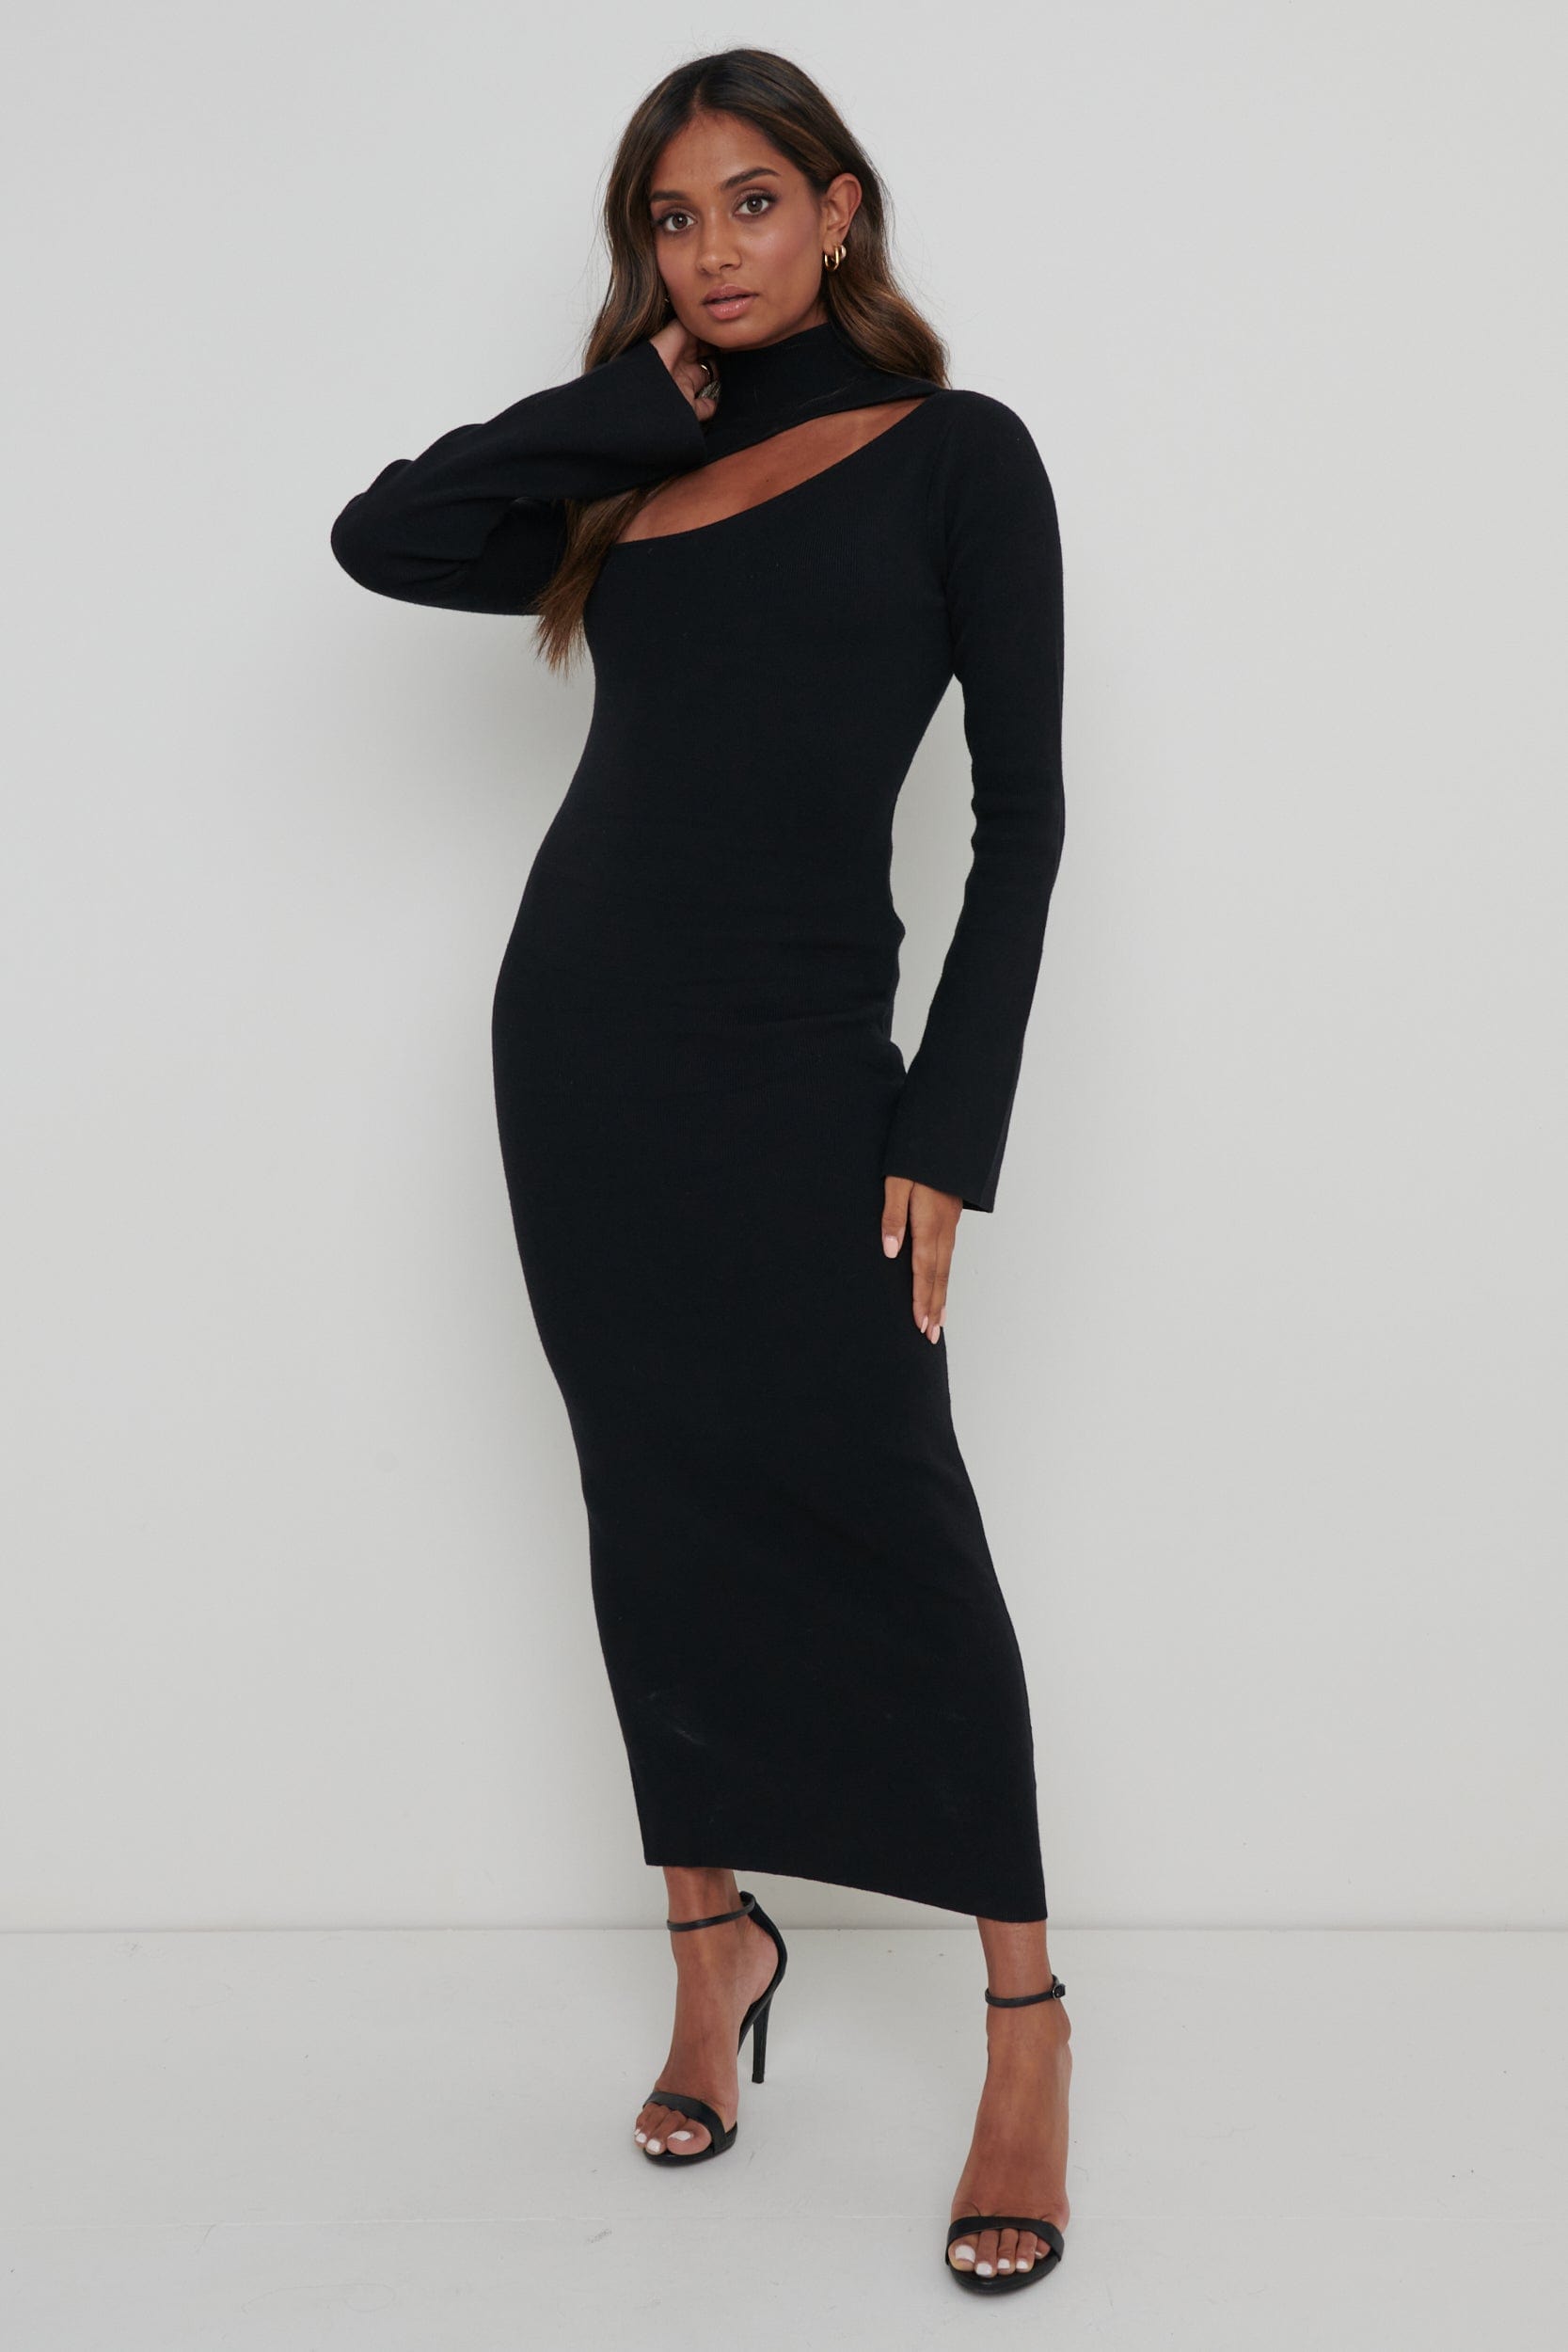 Shani Cut Out Knit Dress - Black, XL